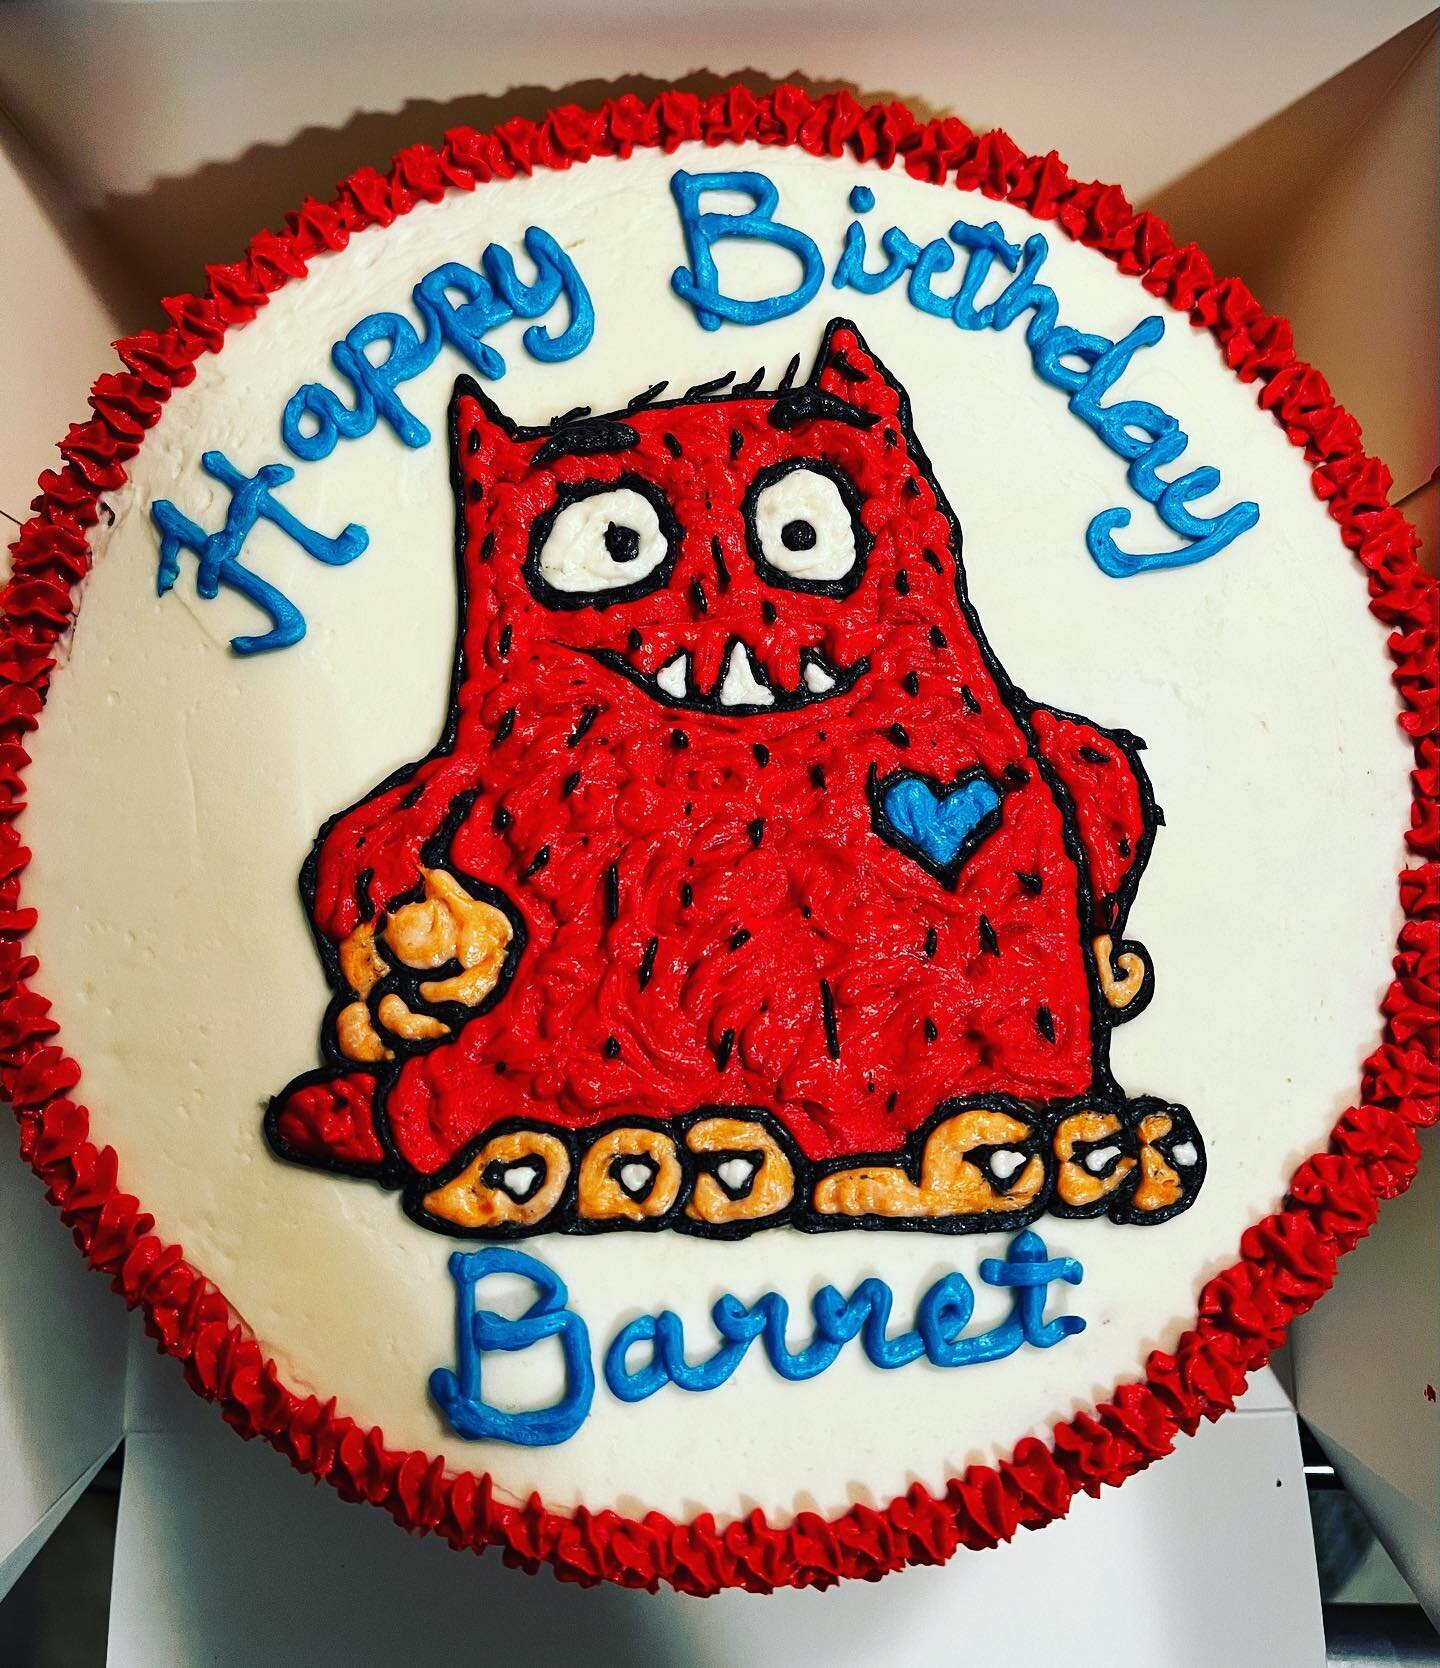 Happy 1st Birthday Berret!
❤️🤍❤️🤍❤️
-
-
-
-
-
#rhbakes #cake #cakes #cakedecorating #cakestagram #cakesofinstagram #cakesofinsta #cakesofig #birthday #birthdaycake #birthdayboy #birthdayparty #lovemonster #lovemonstercake #1st #1stbirthday #oneyear